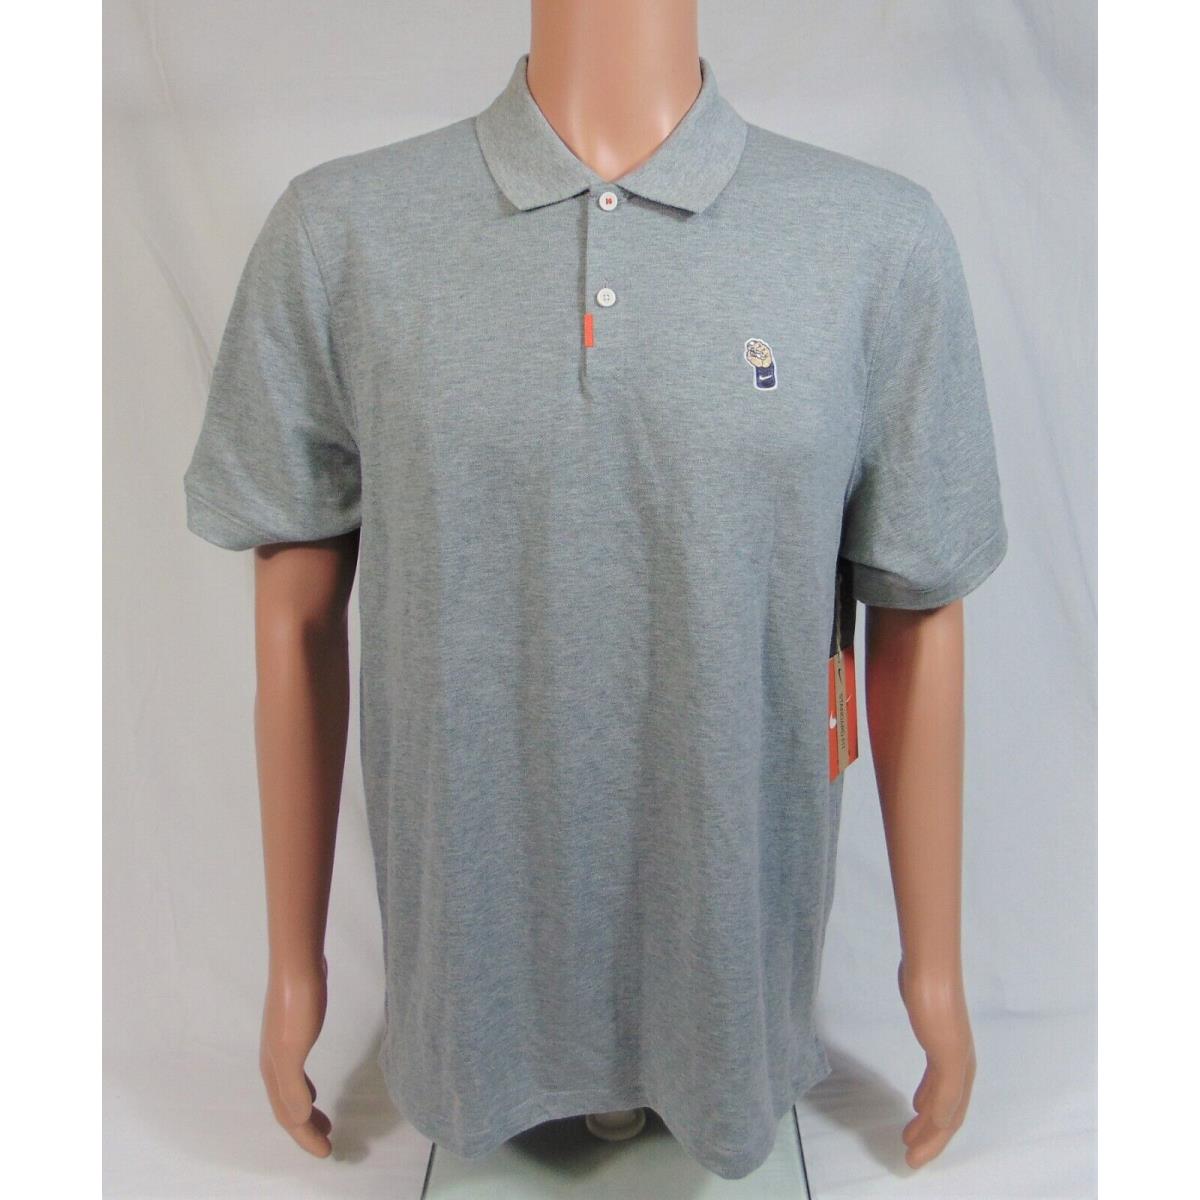 Nike Rafa Nadal Vamos Victory Polo Golf Tennis Shirt Sz L CZ7726 063 Rare